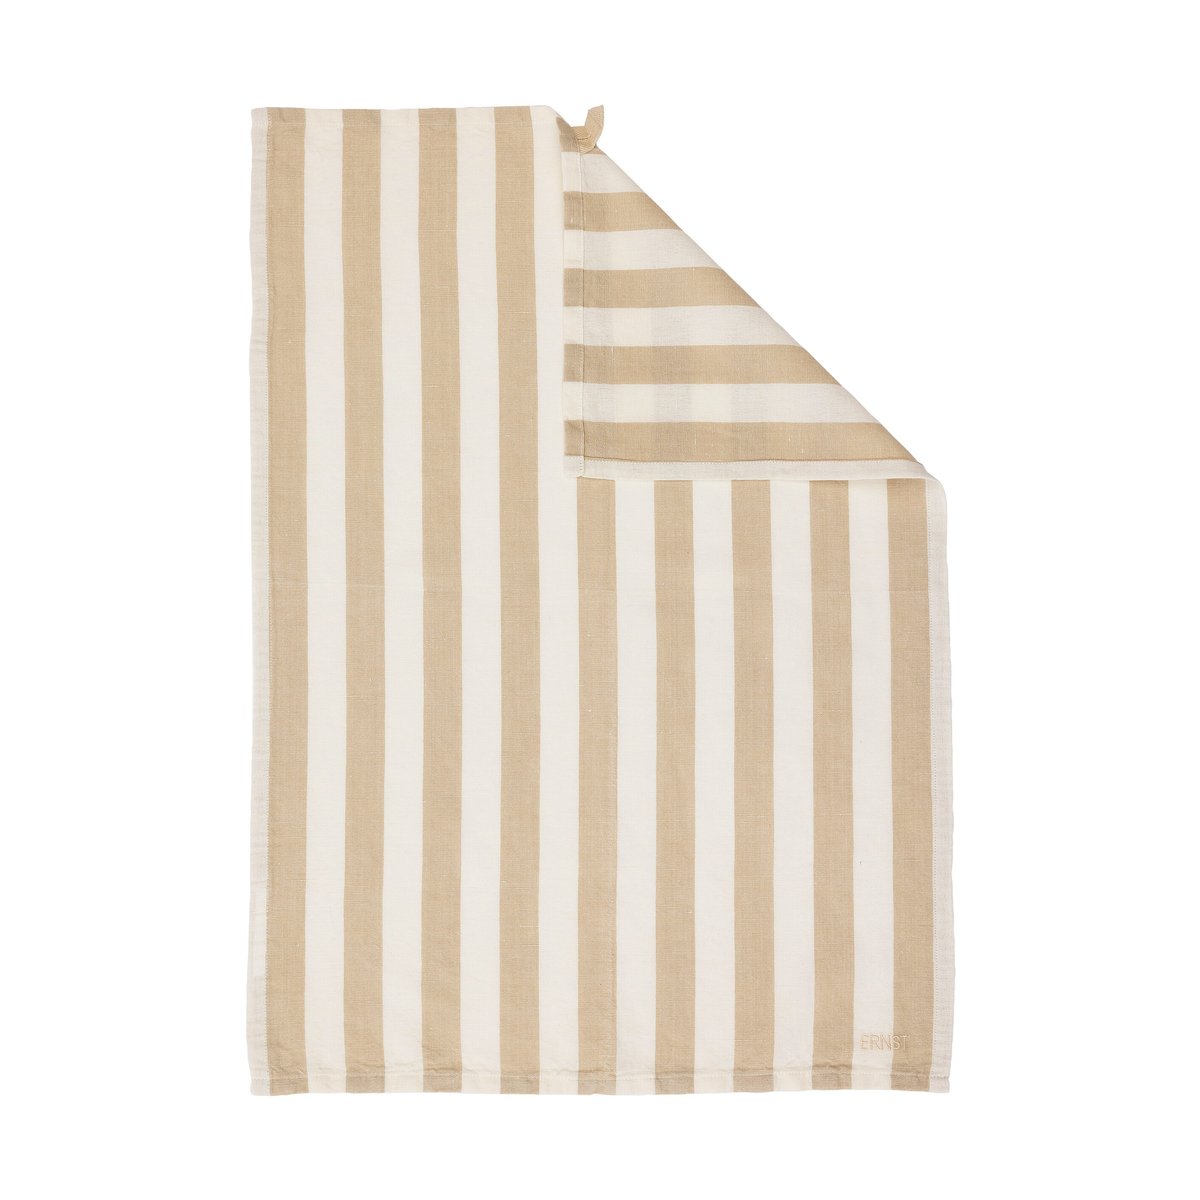 ERNST Ernst kjøkkenhåndkle brede striper 47×70 cm Beige-hvit